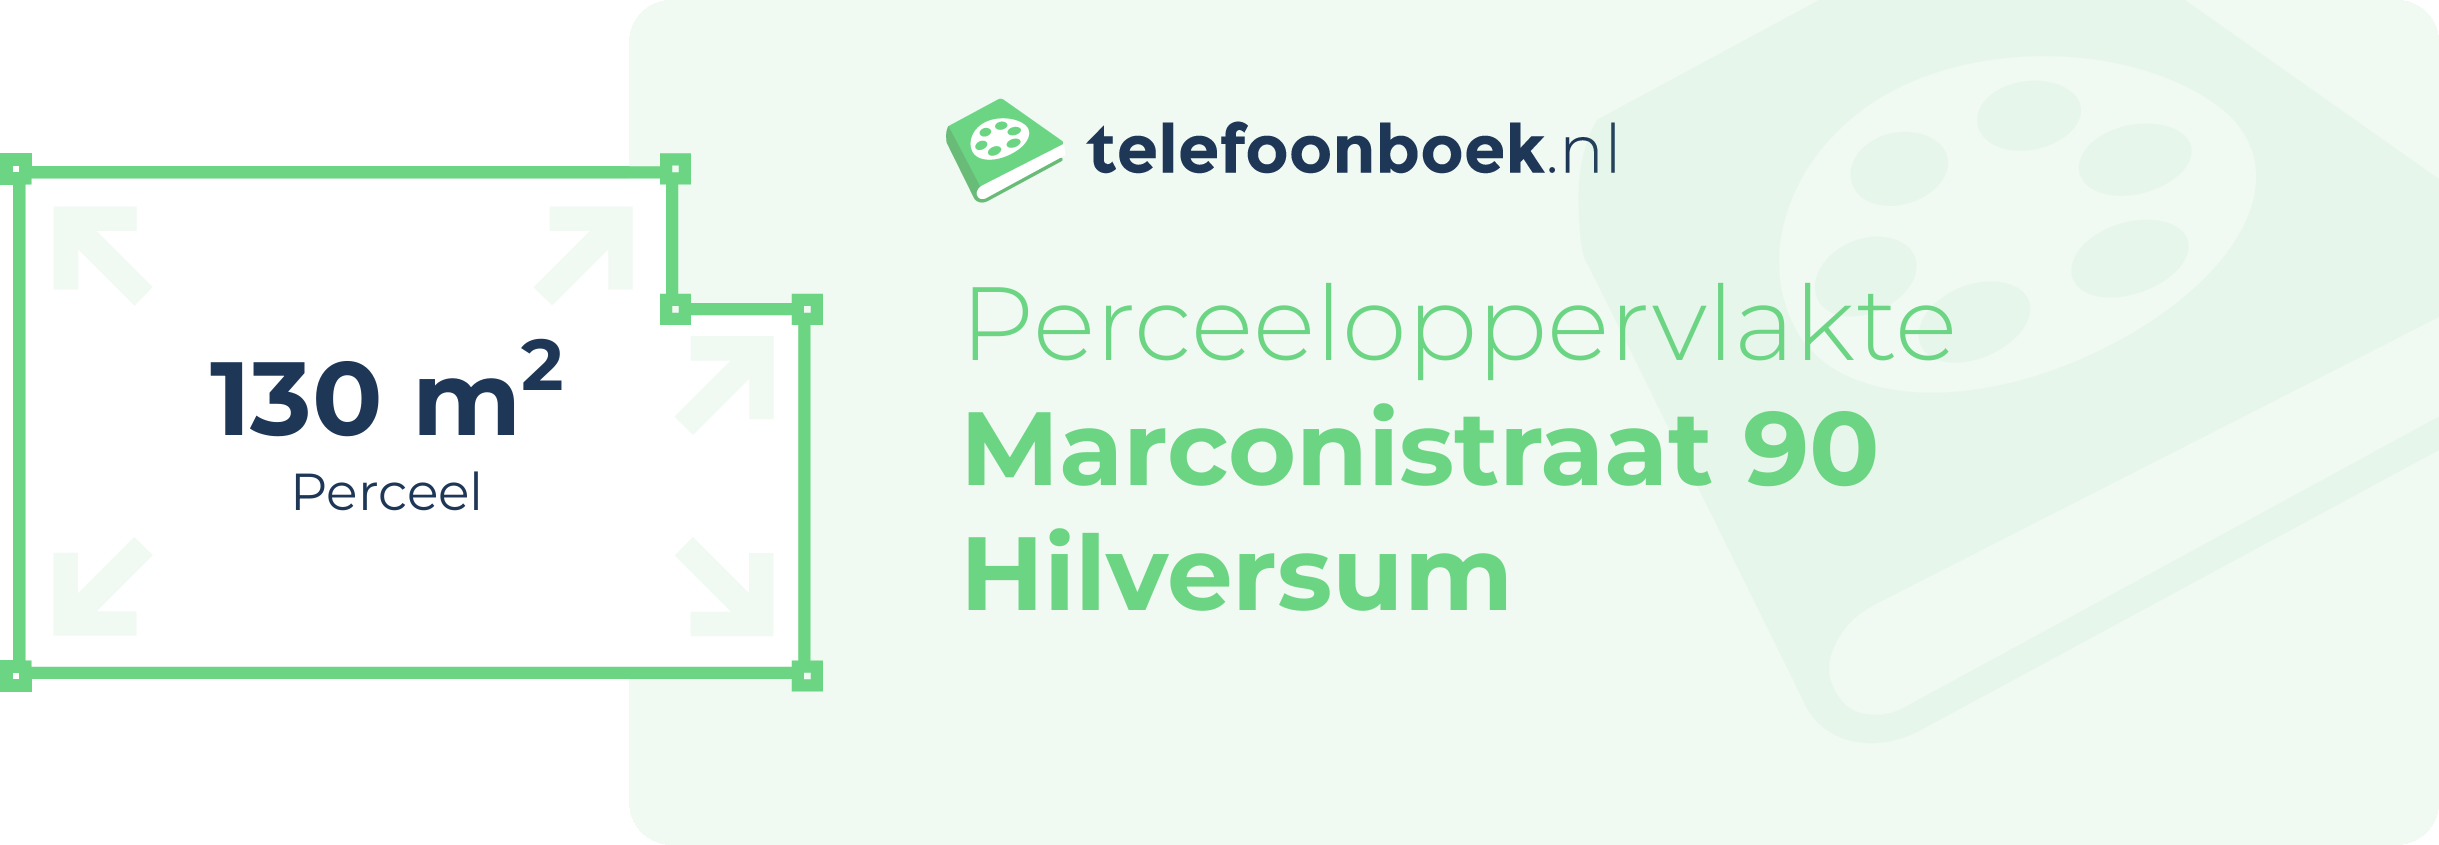 Perceeloppervlakte Marconistraat 90 Hilversum